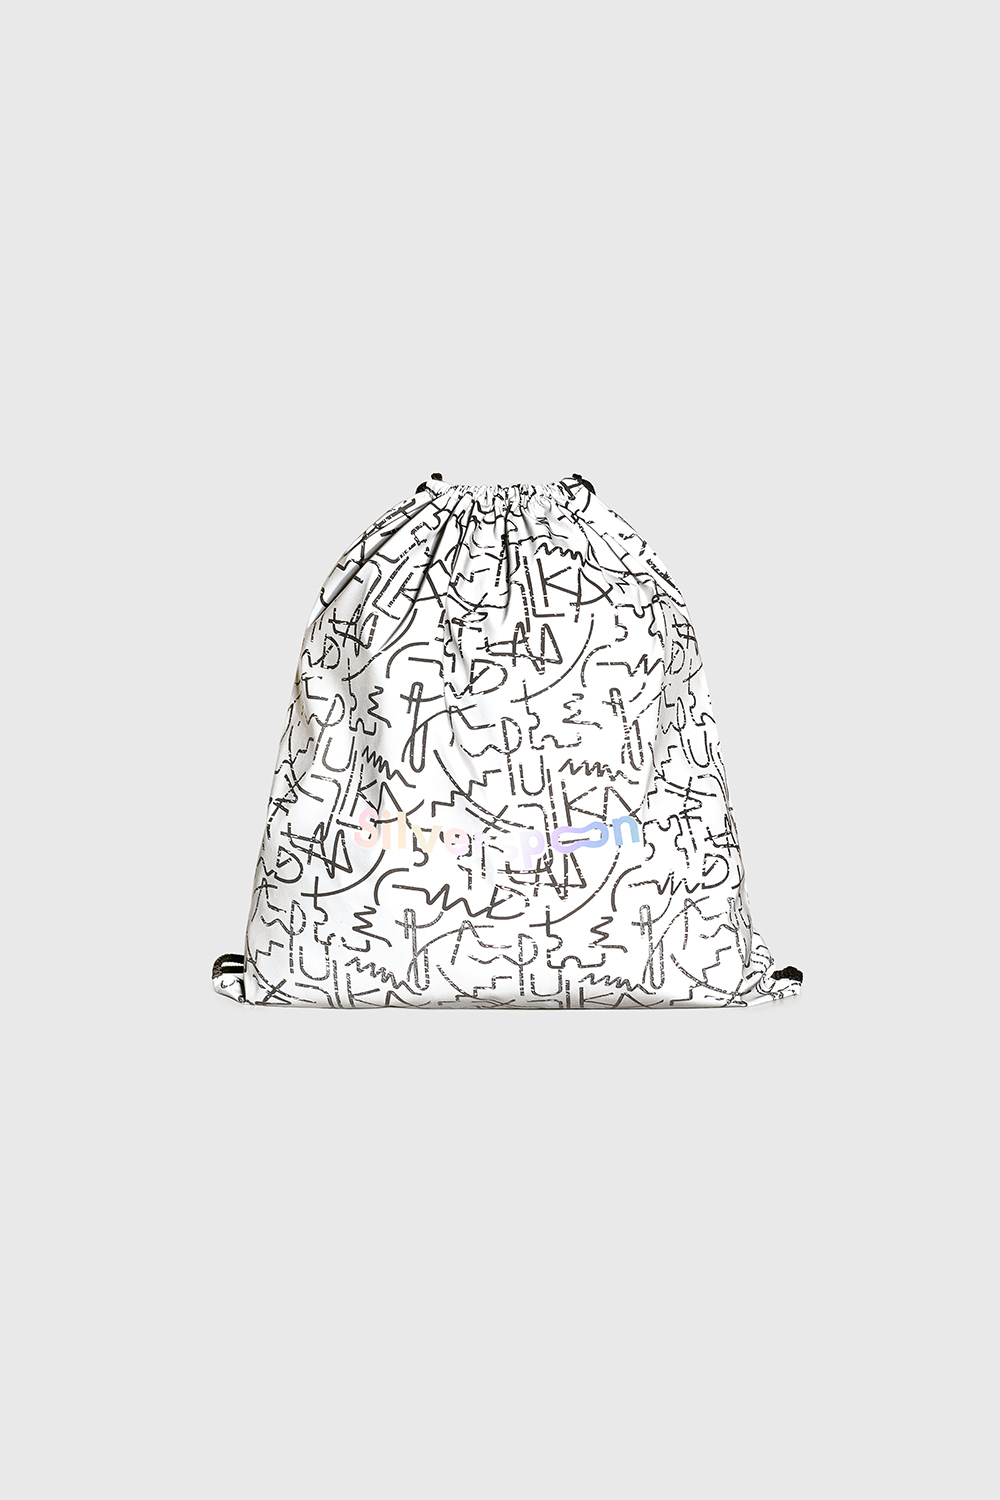 Мешок-рюкзак из светоотражающей ткани (SAFSU-409-39805-973) Silver spoon